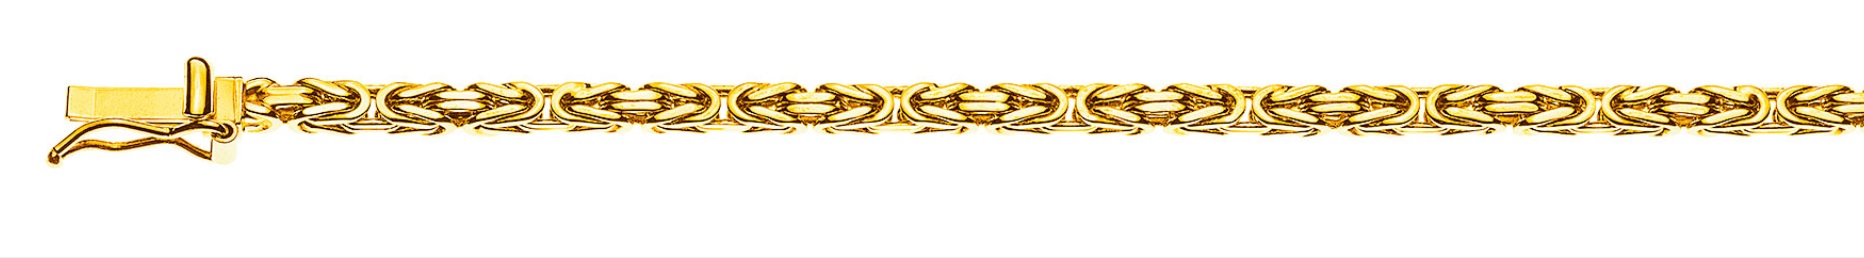 AURONOS Prestige Collier en or jaune 18K chaîne royale 60cm 2.5mm